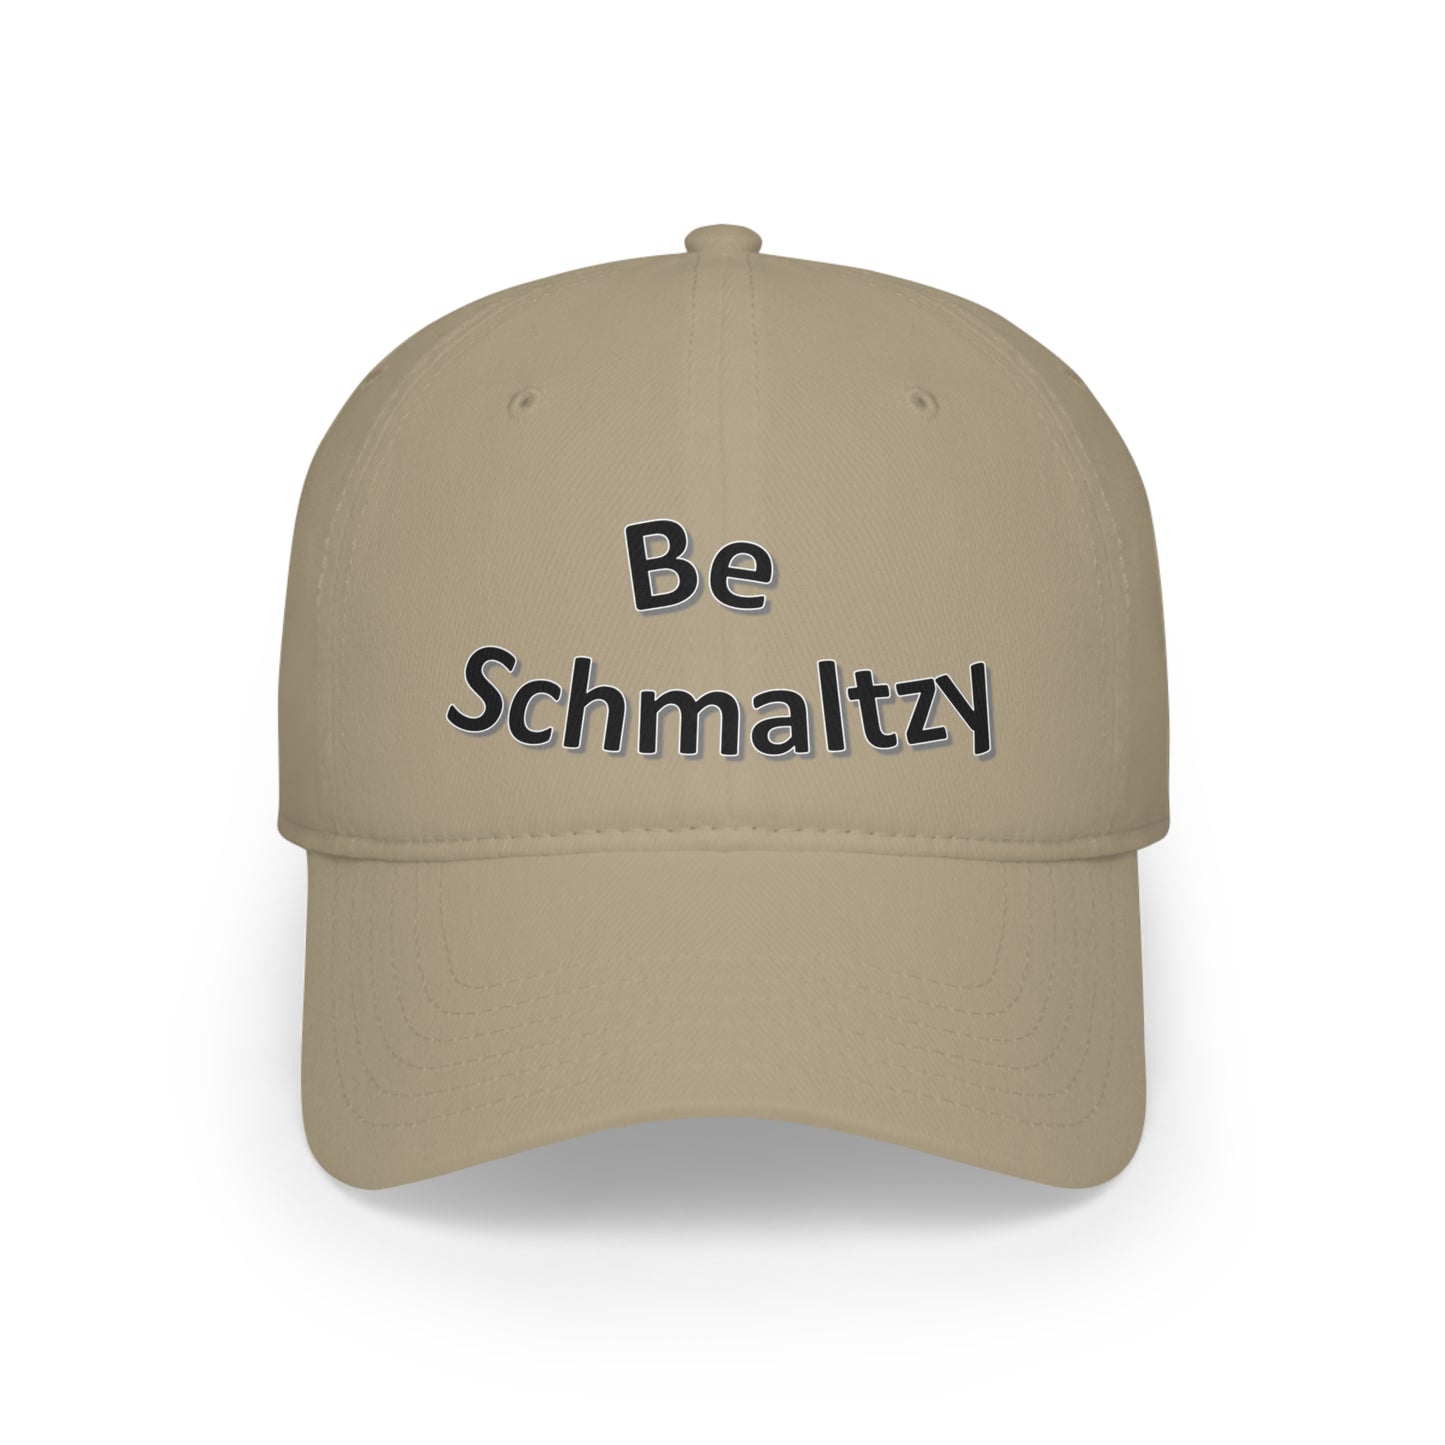 Be Schmaltzy - Low Profile Baseball Cap